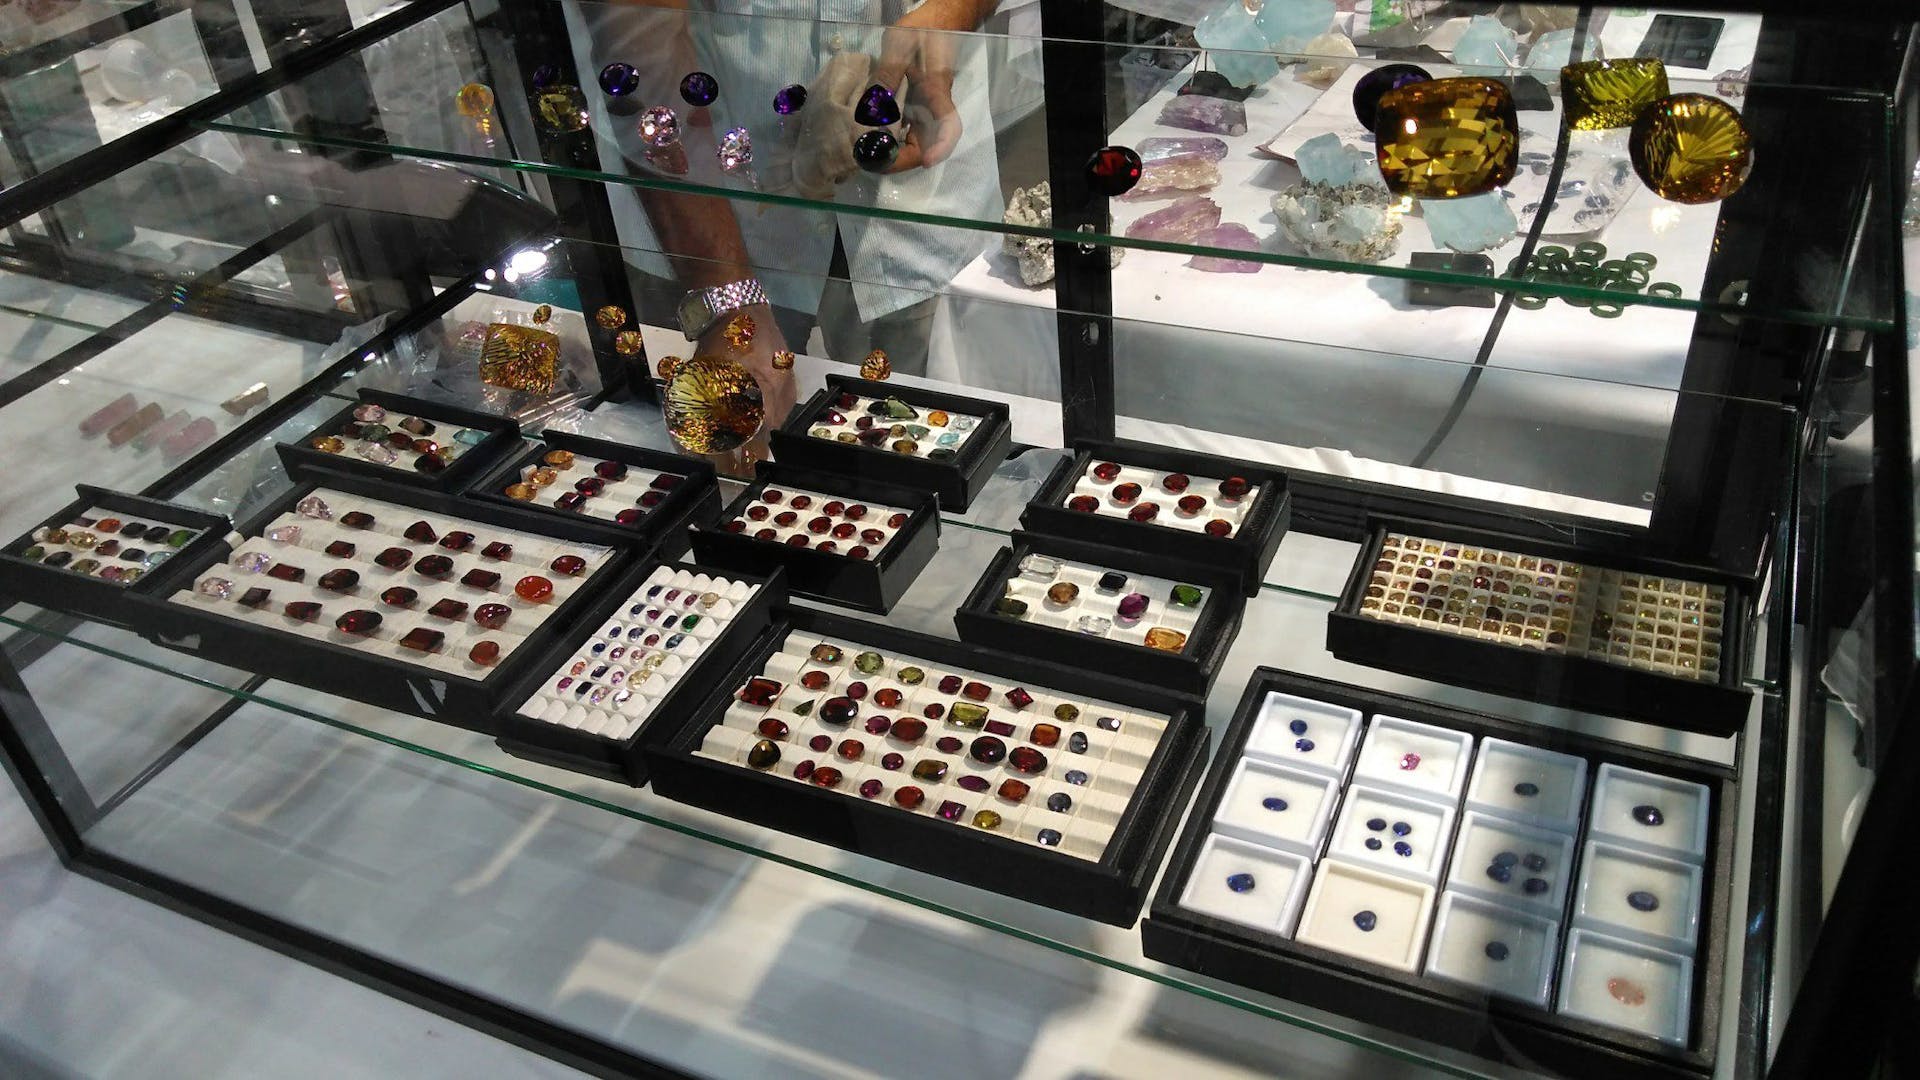 denver gem show - gems on display